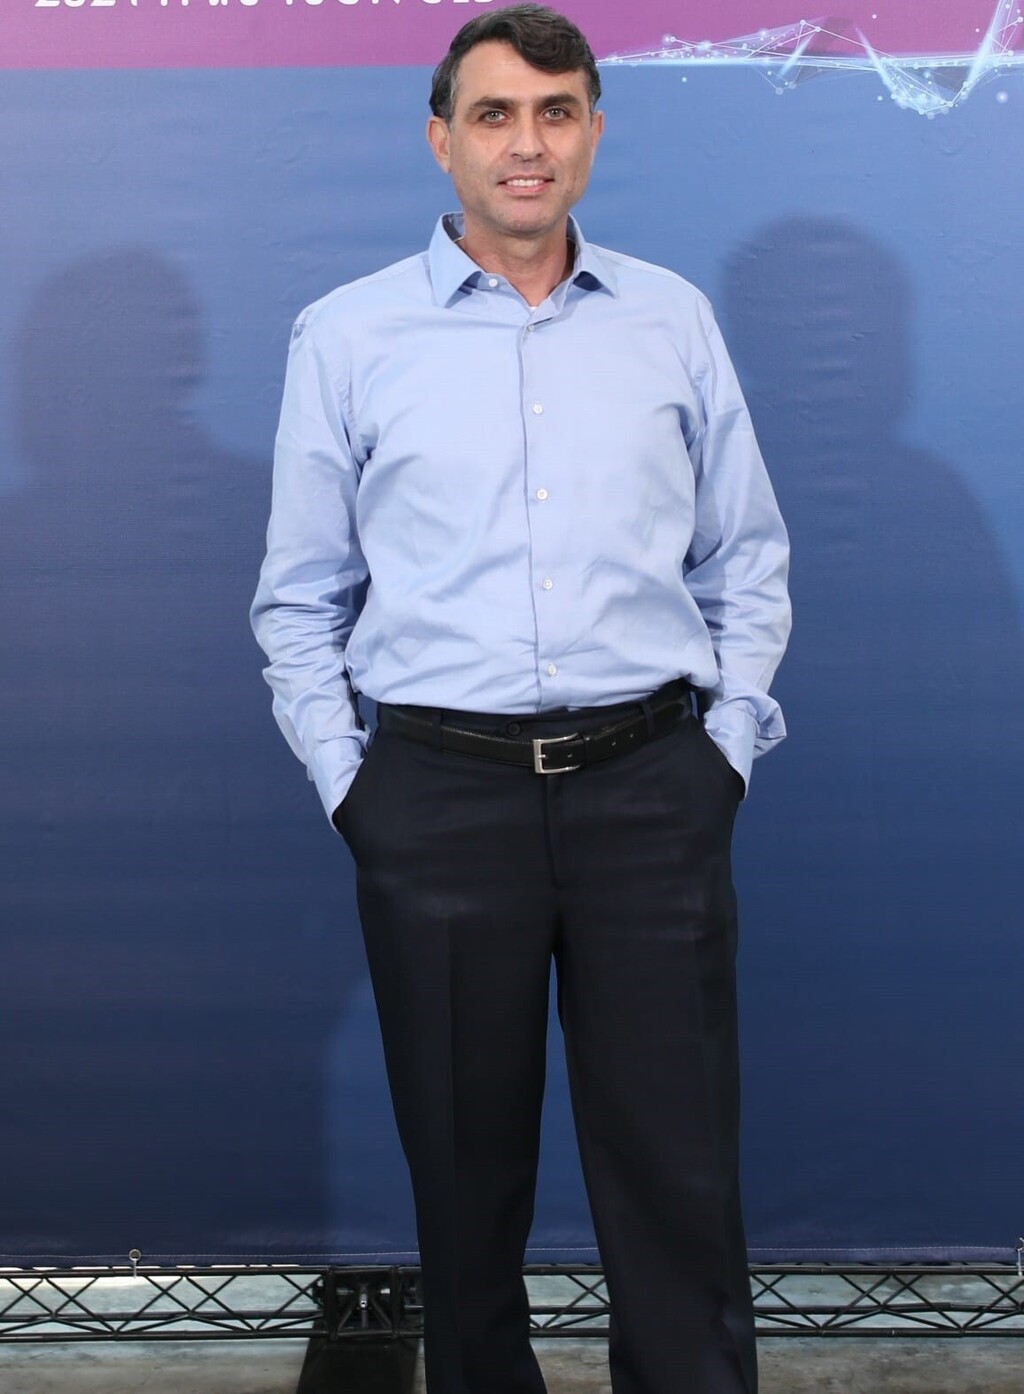 שמעון פרג׳ סמנכ״ל משאבי האנוש של מכבי שירותי בריאות